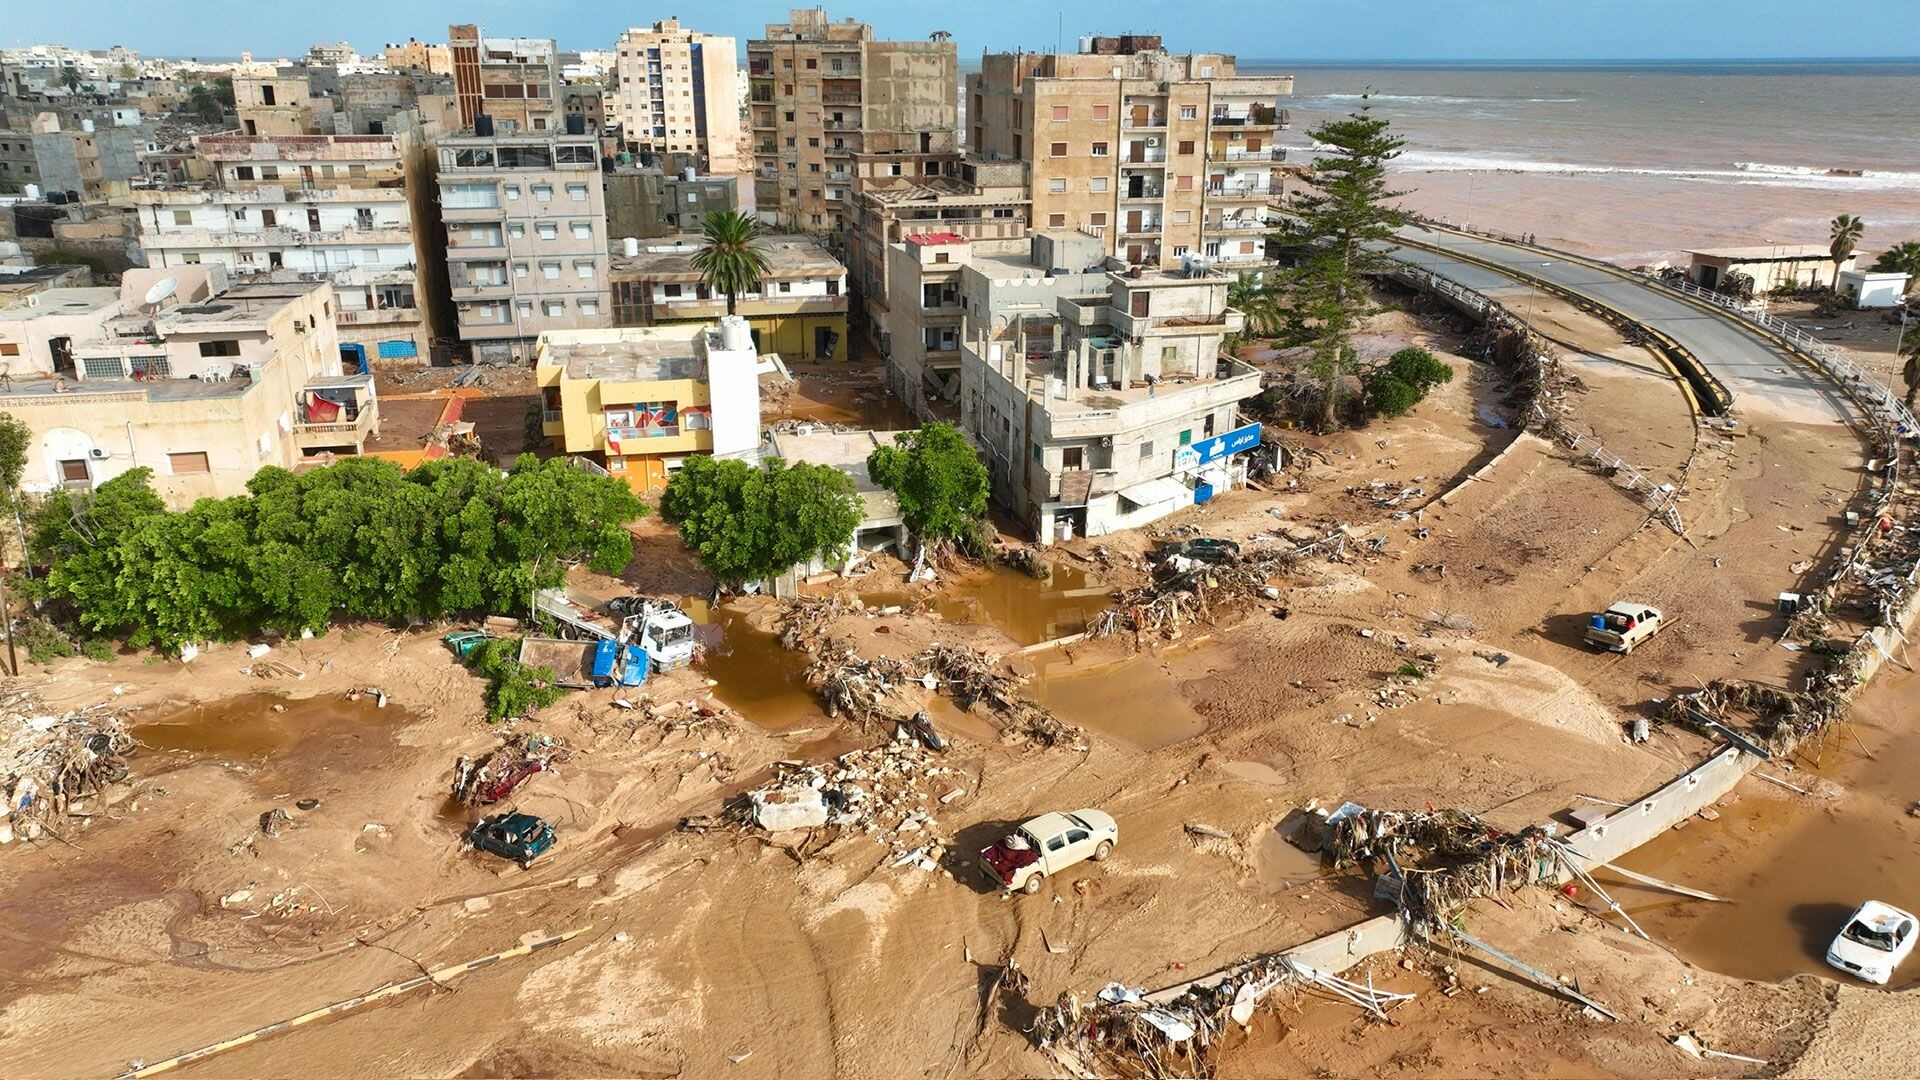 El barro y la arena cubren las calles. (Foto AP/Yousef Murad)